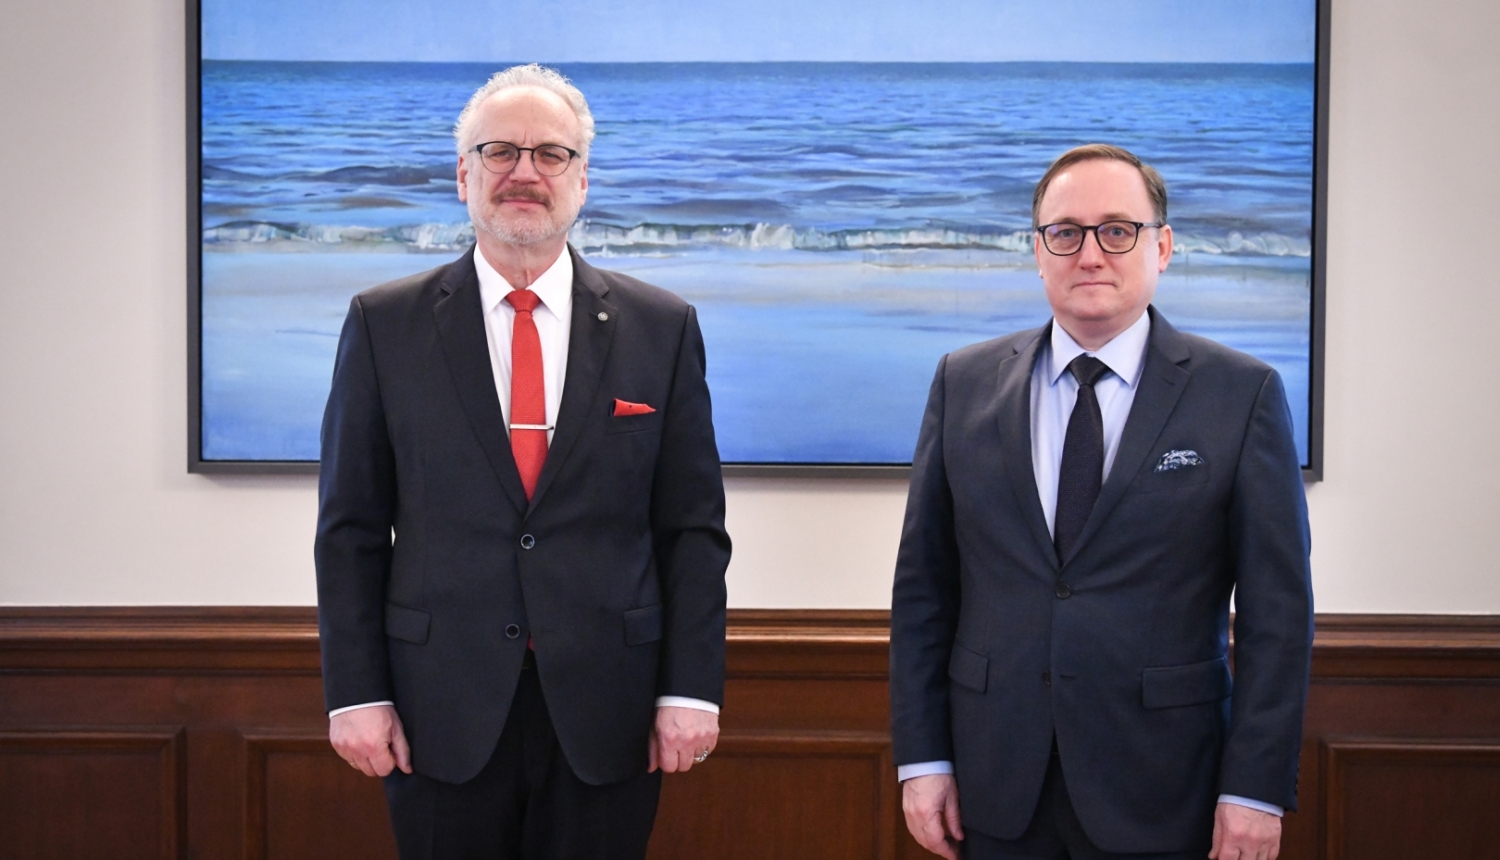 No kreisās: Latvijas Valsts prezidents Egils Levits un Latvijas Bankas vadītājs Mārtiņš Kazāks, tiekoties Rīgas pilī 2023. gada 27. martā. 